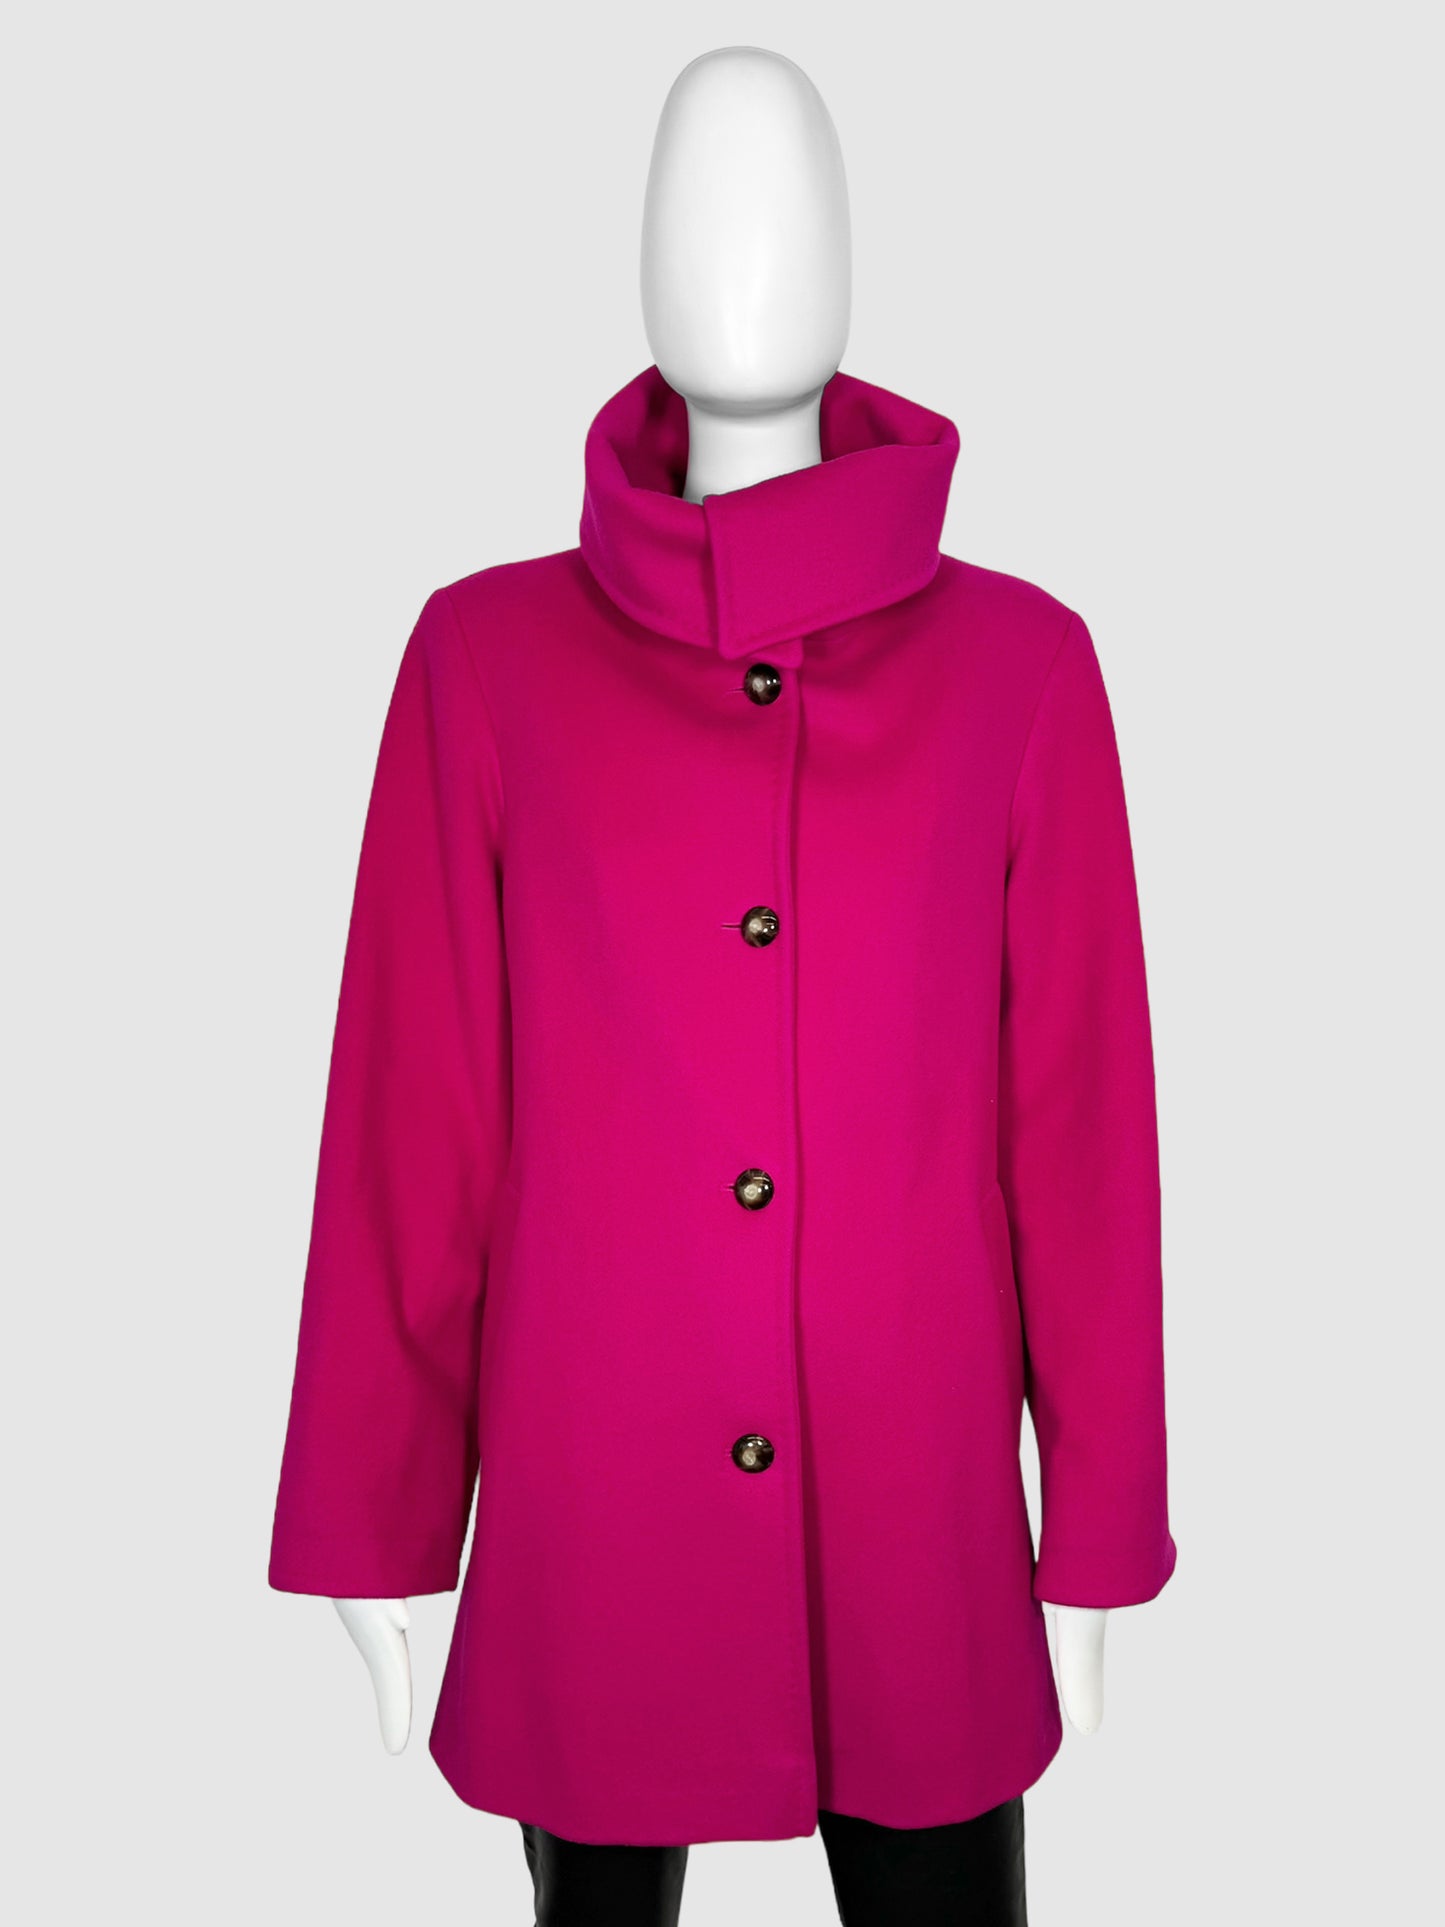 Fleurette Wool Coat - Size 6